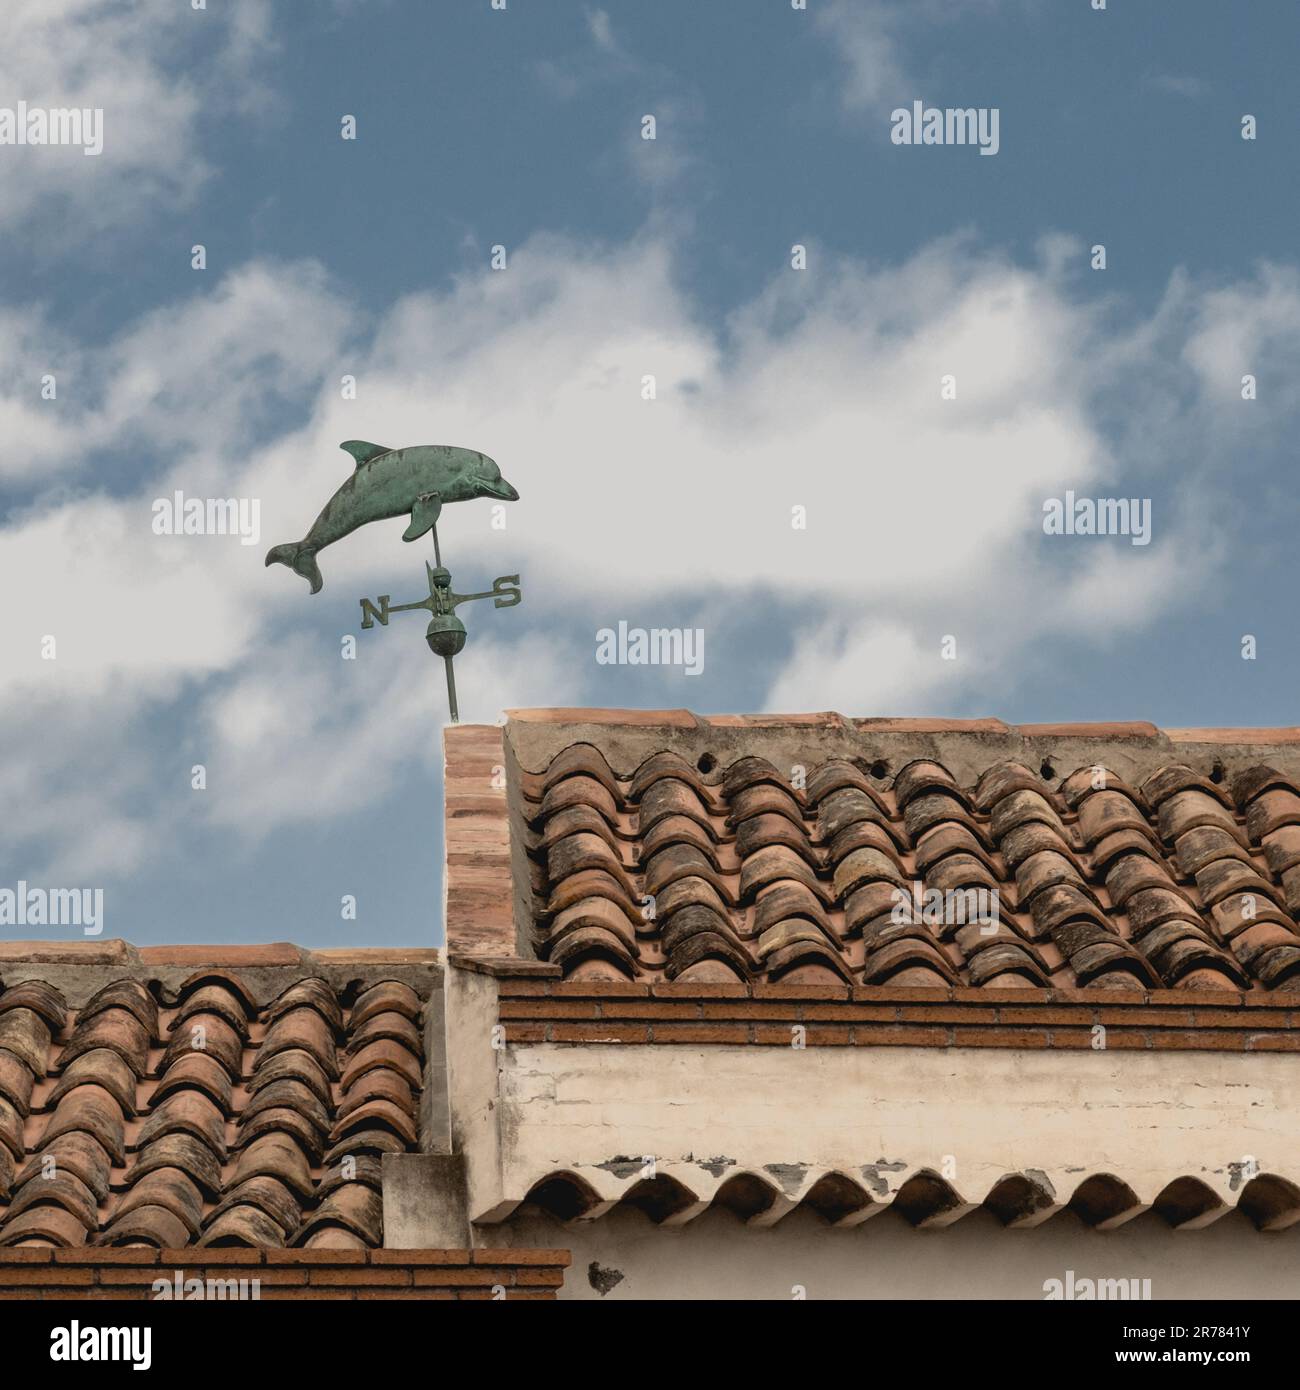 Un dauphin comme une girouette au-dessus d'un toit sur le front de mer de Catane. Catane, Sicile, Italie Banque D'Images